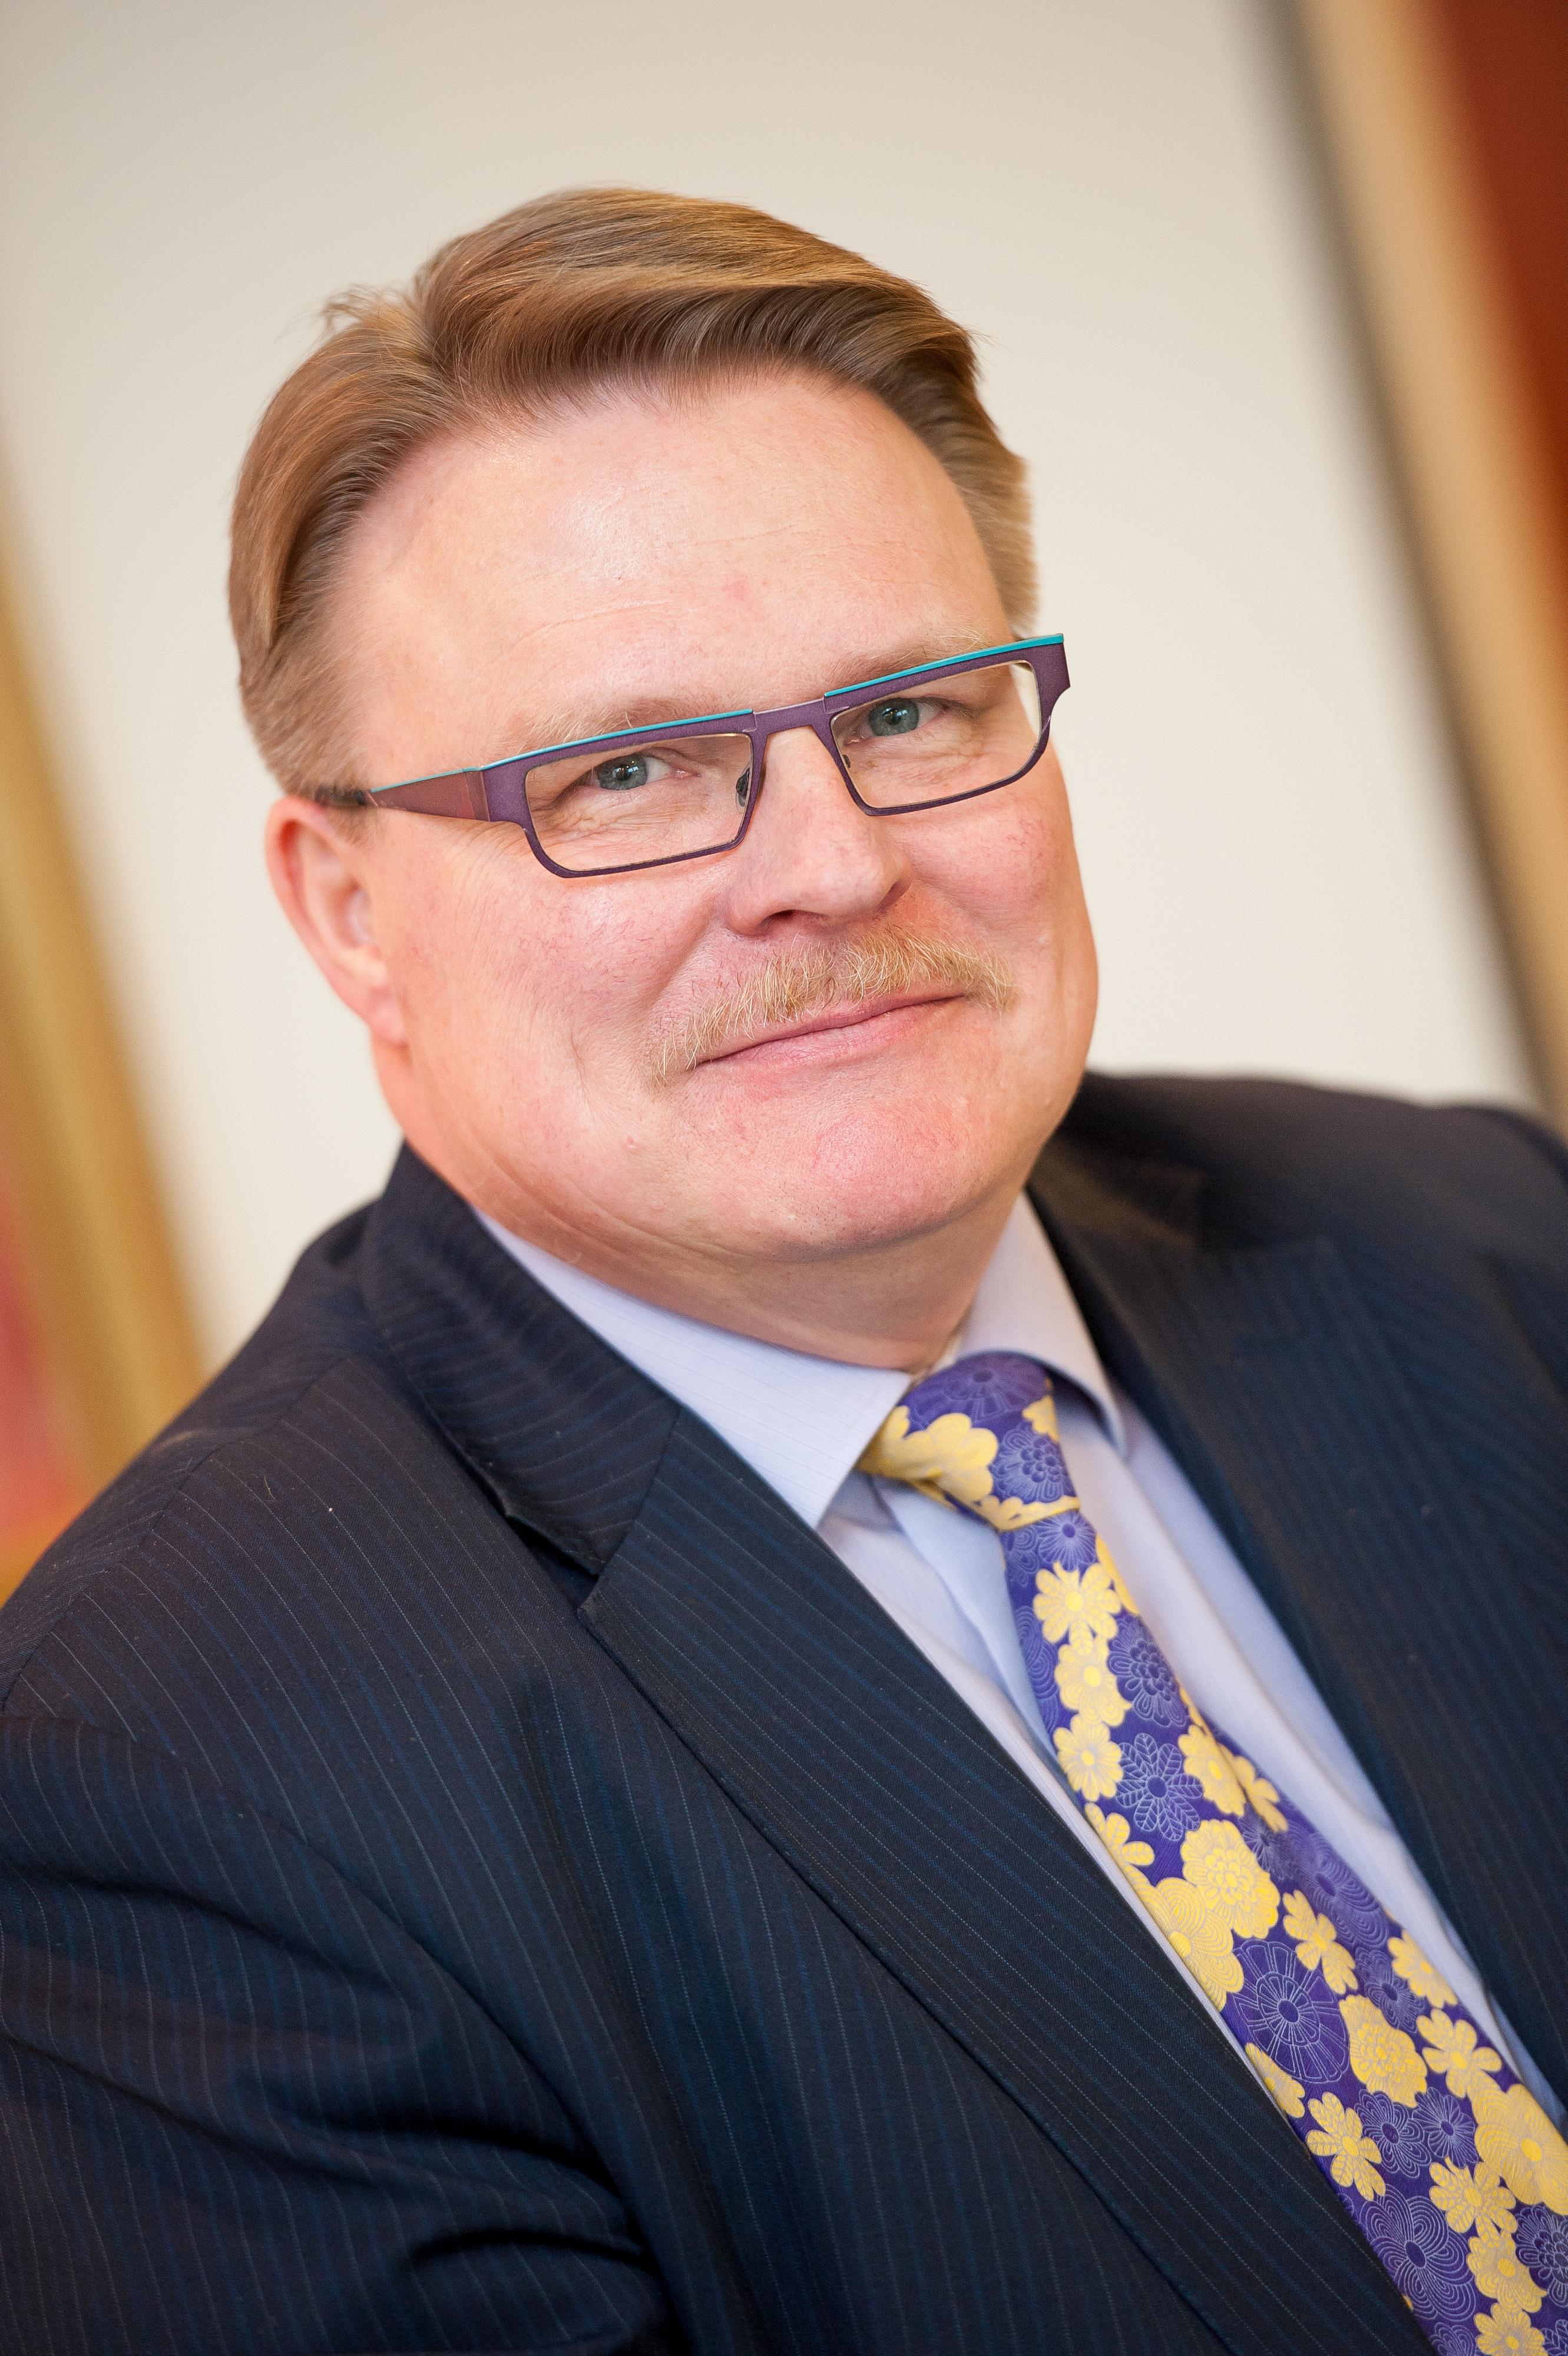 Invalidiliiton pääjohtaja Petri Pohjonen. Hänellä on vaaleanruskeat hiukset, silmälasit, tumma puvuntakki, vaaleansininen paita ja sini-keltainen solmio.